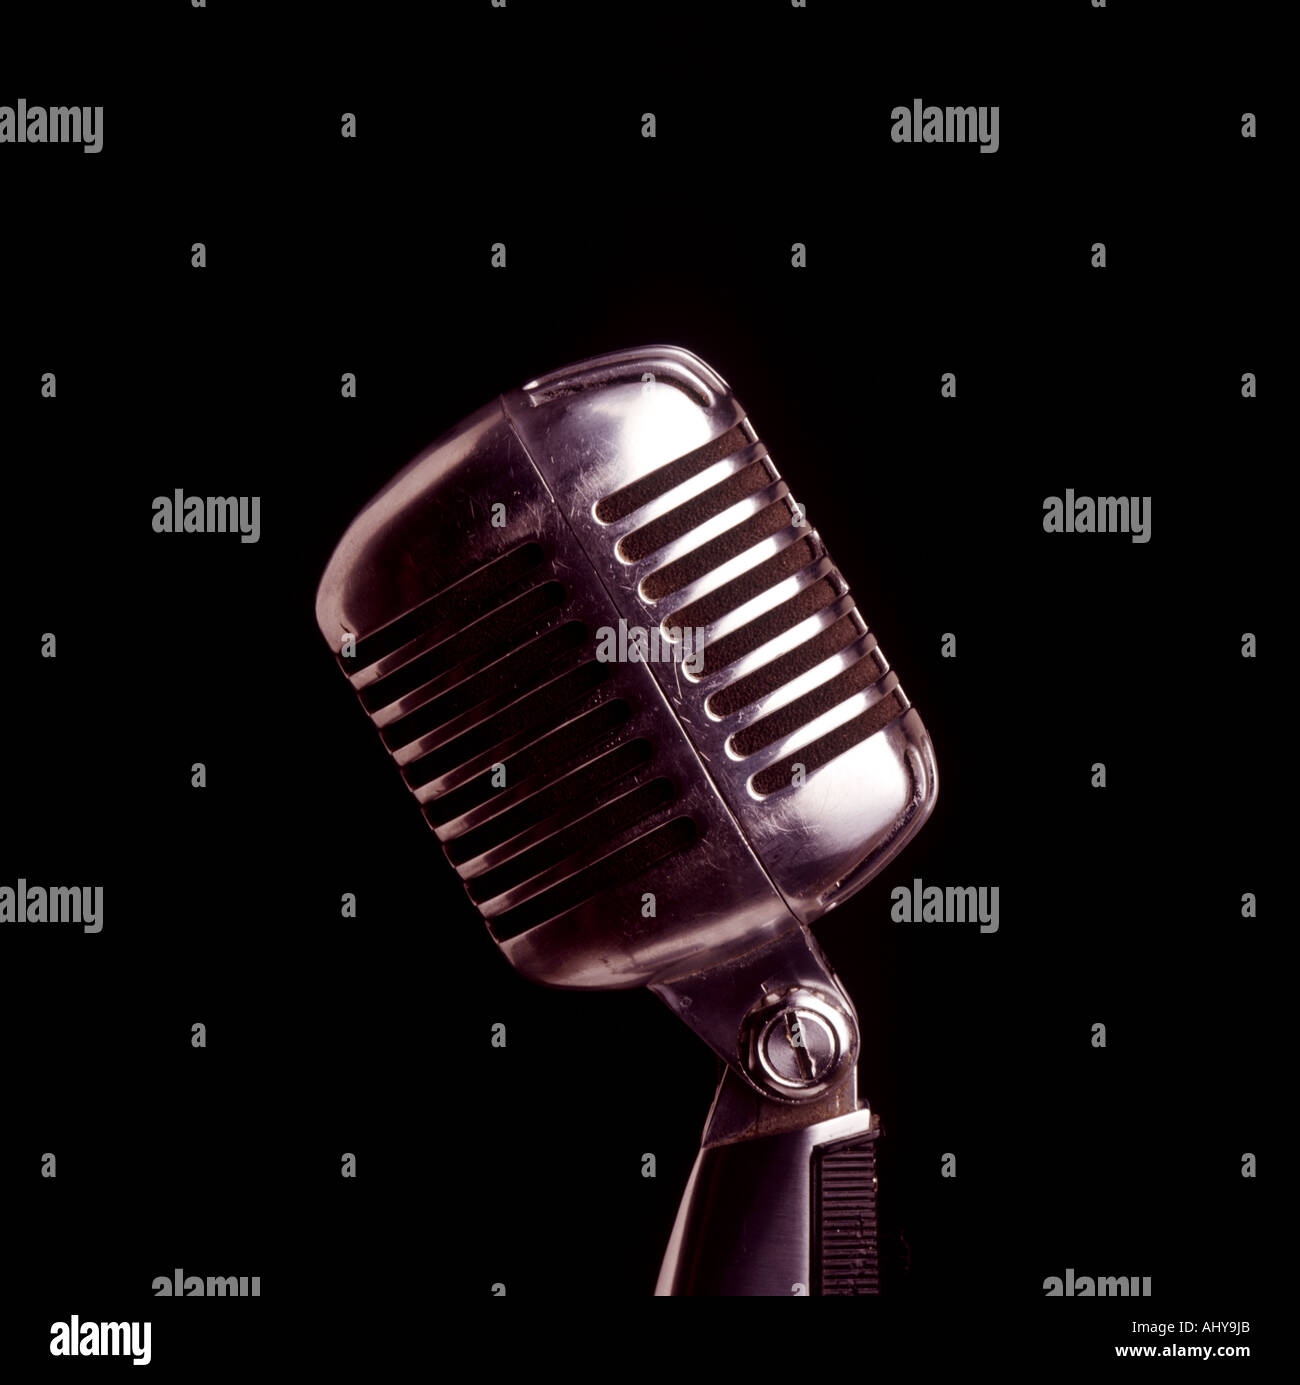 Mikrofon klassische amerikanische Shure Unidyne Modell aus 1941 bis 1946  Stockfotografie - Alamy